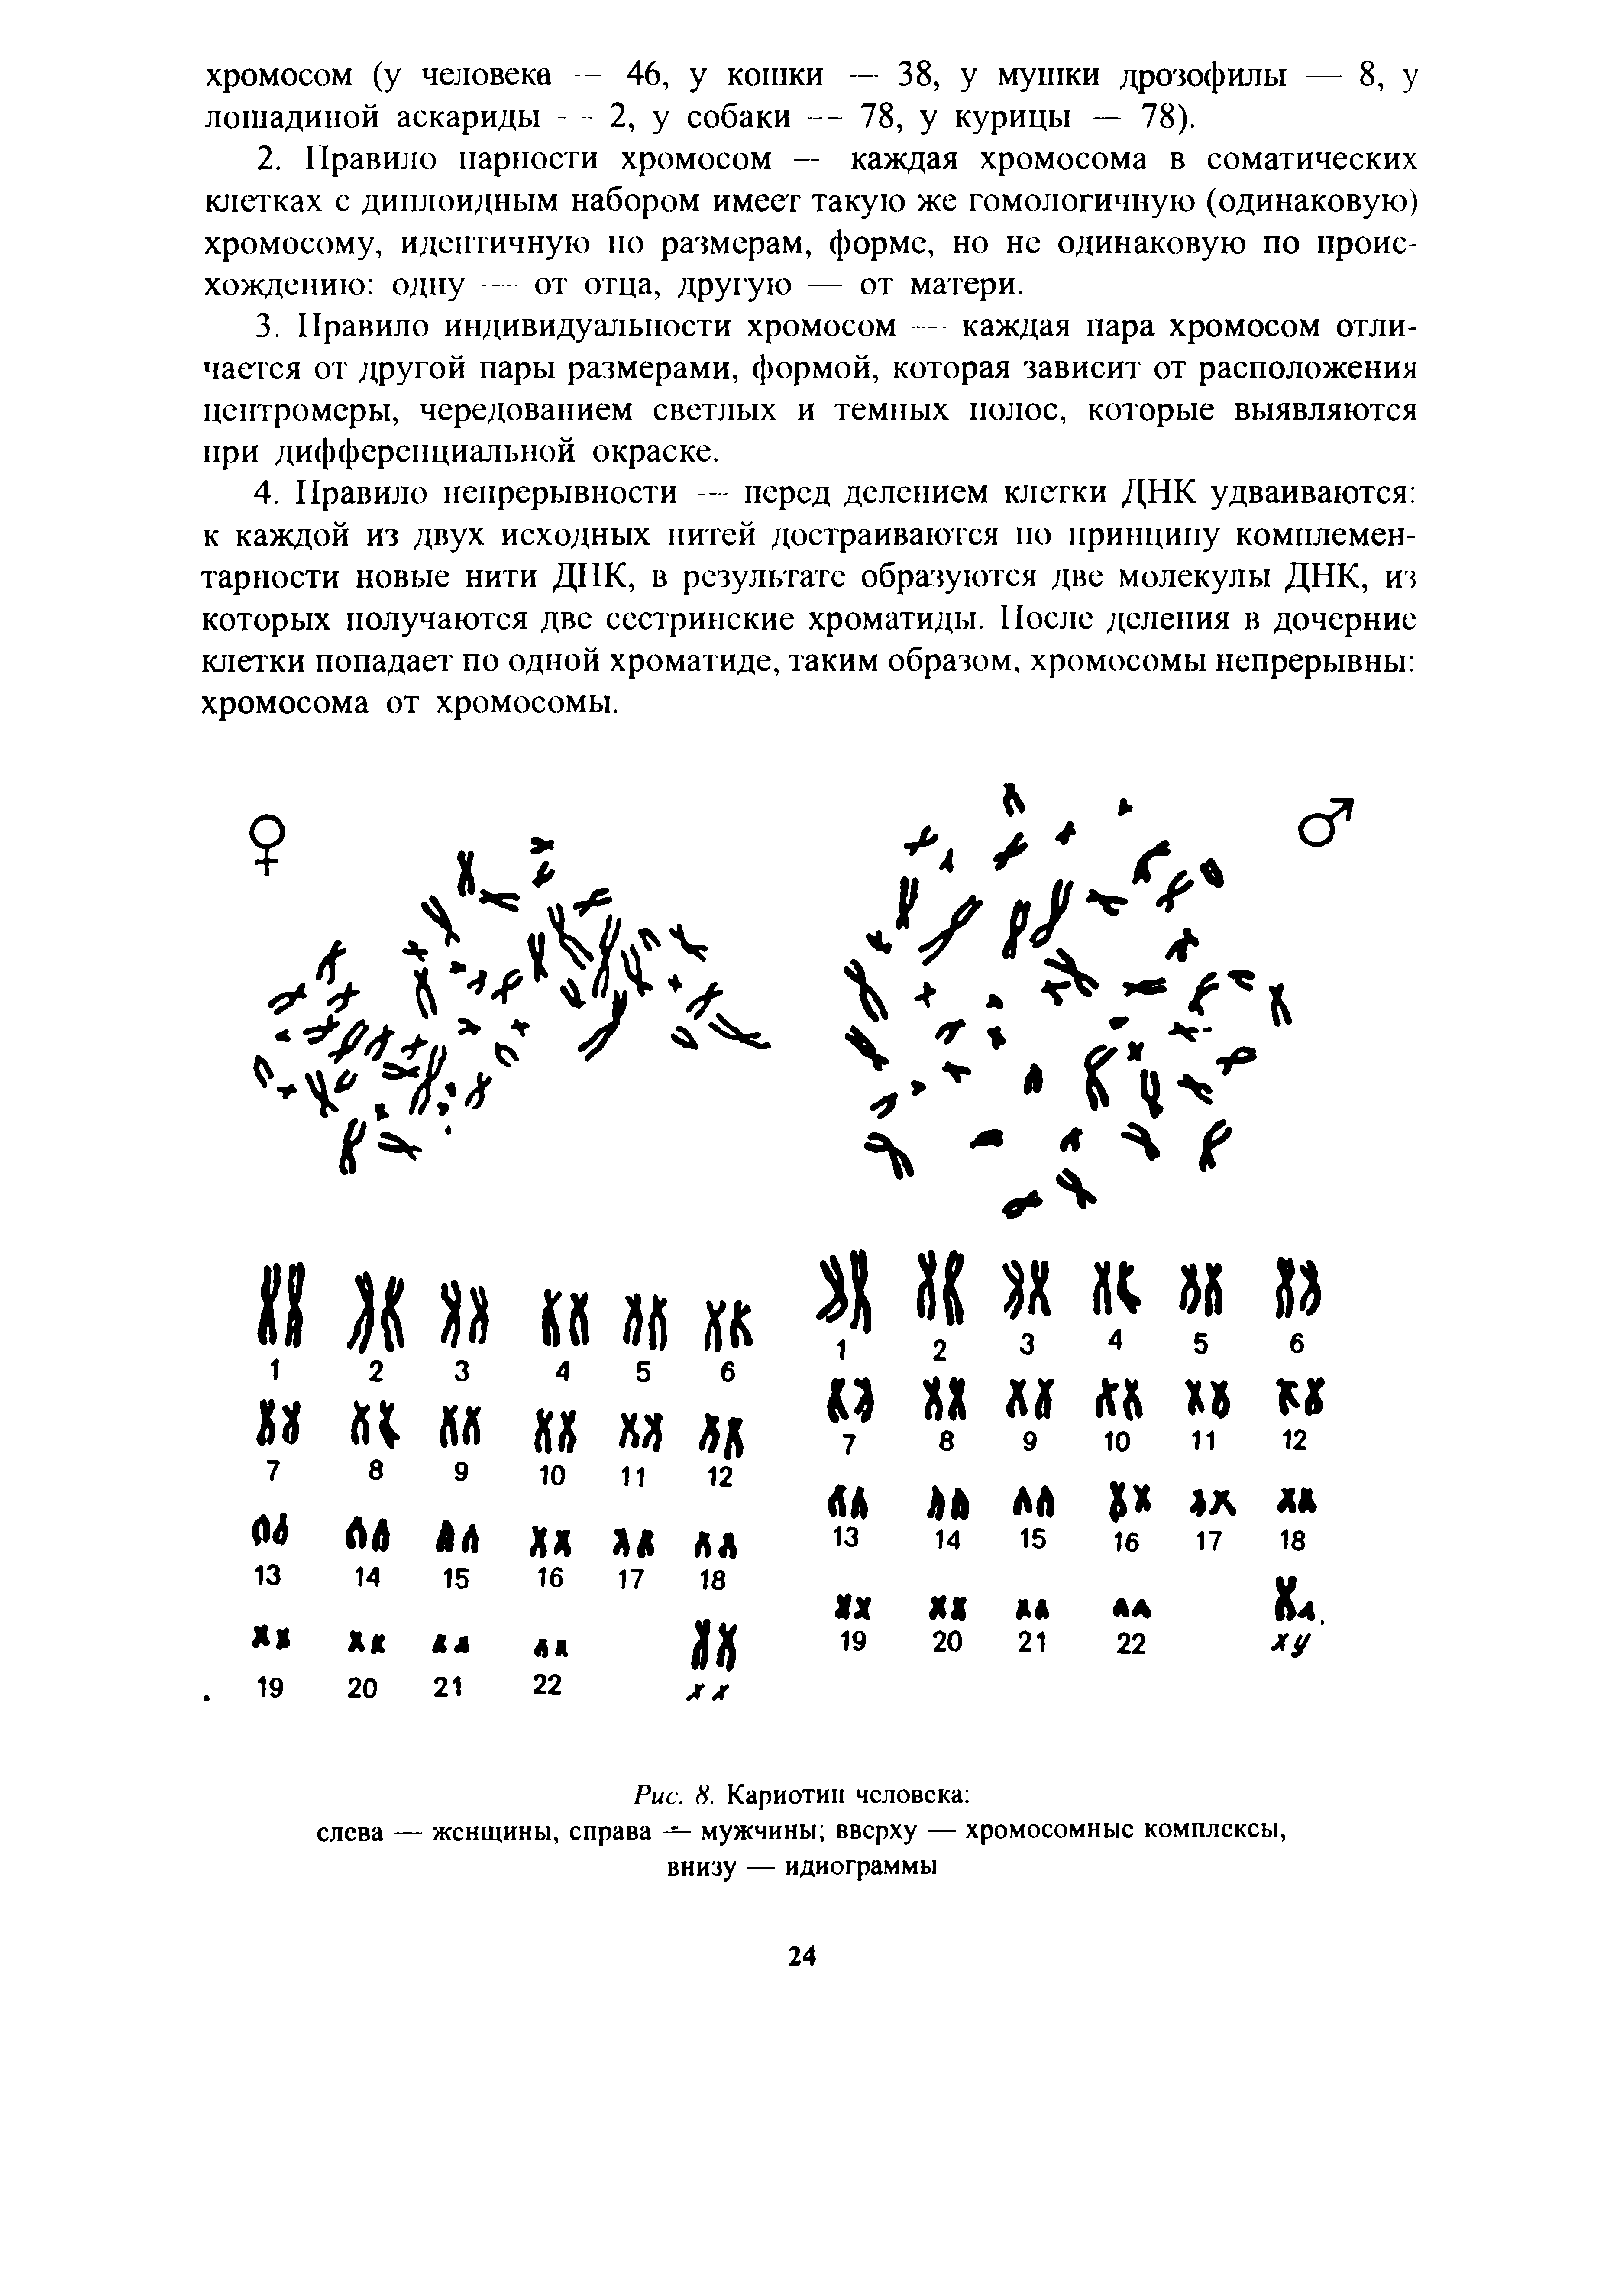 Рис. 8. Кариотип человека слева — женщины, справа — мужчины вверху — хромосомные комплексы, внизу — идиограммы...